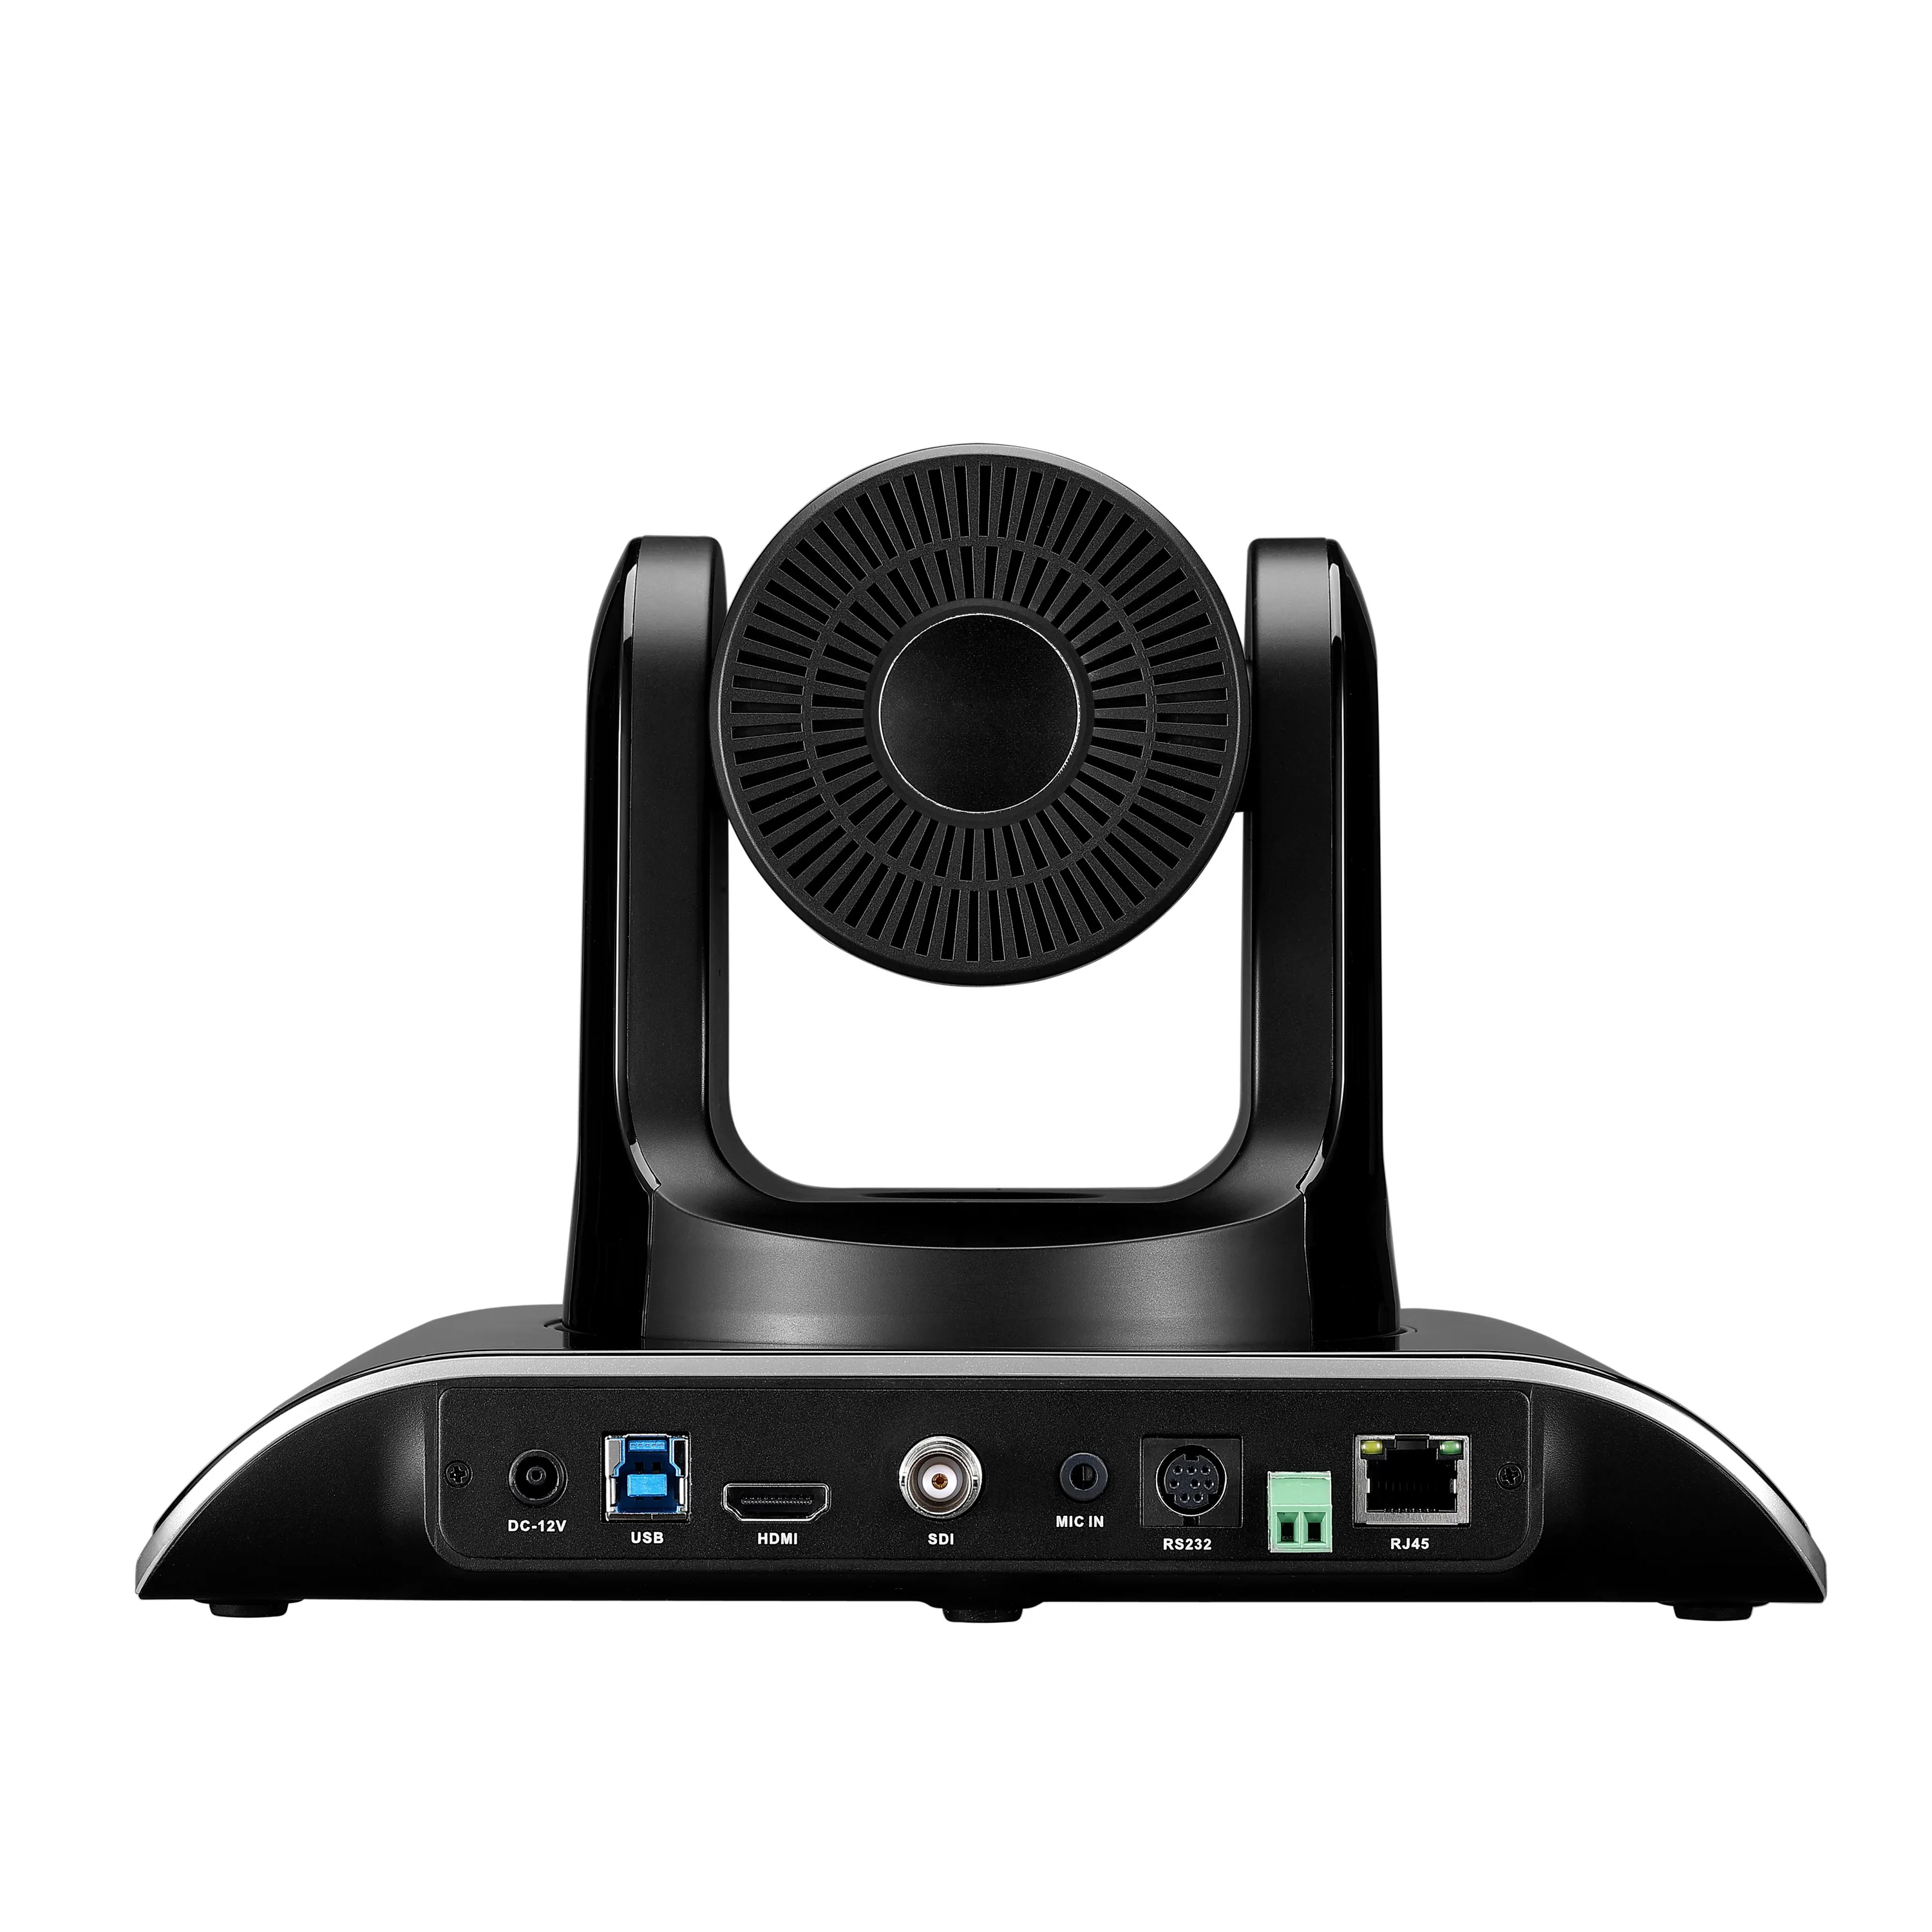 TEVO-VHD30N 30x оптический зум PTZ IP видео конференц-связи IP камера с DVI 3G-SDI порт для прямые трансляции